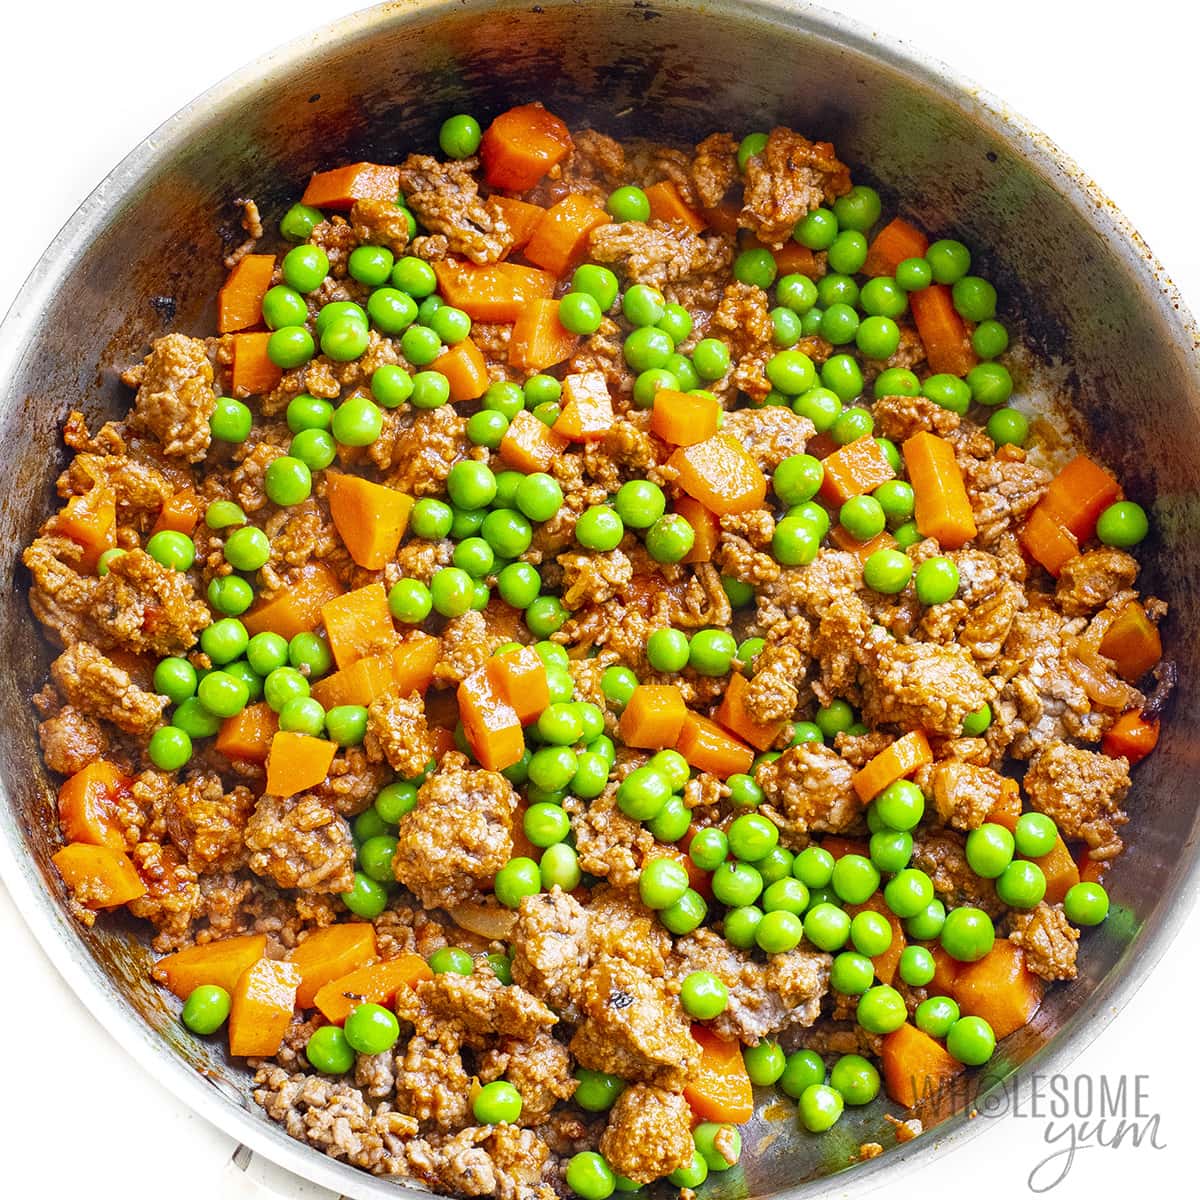 Add peas to shepherds pie in skillet.